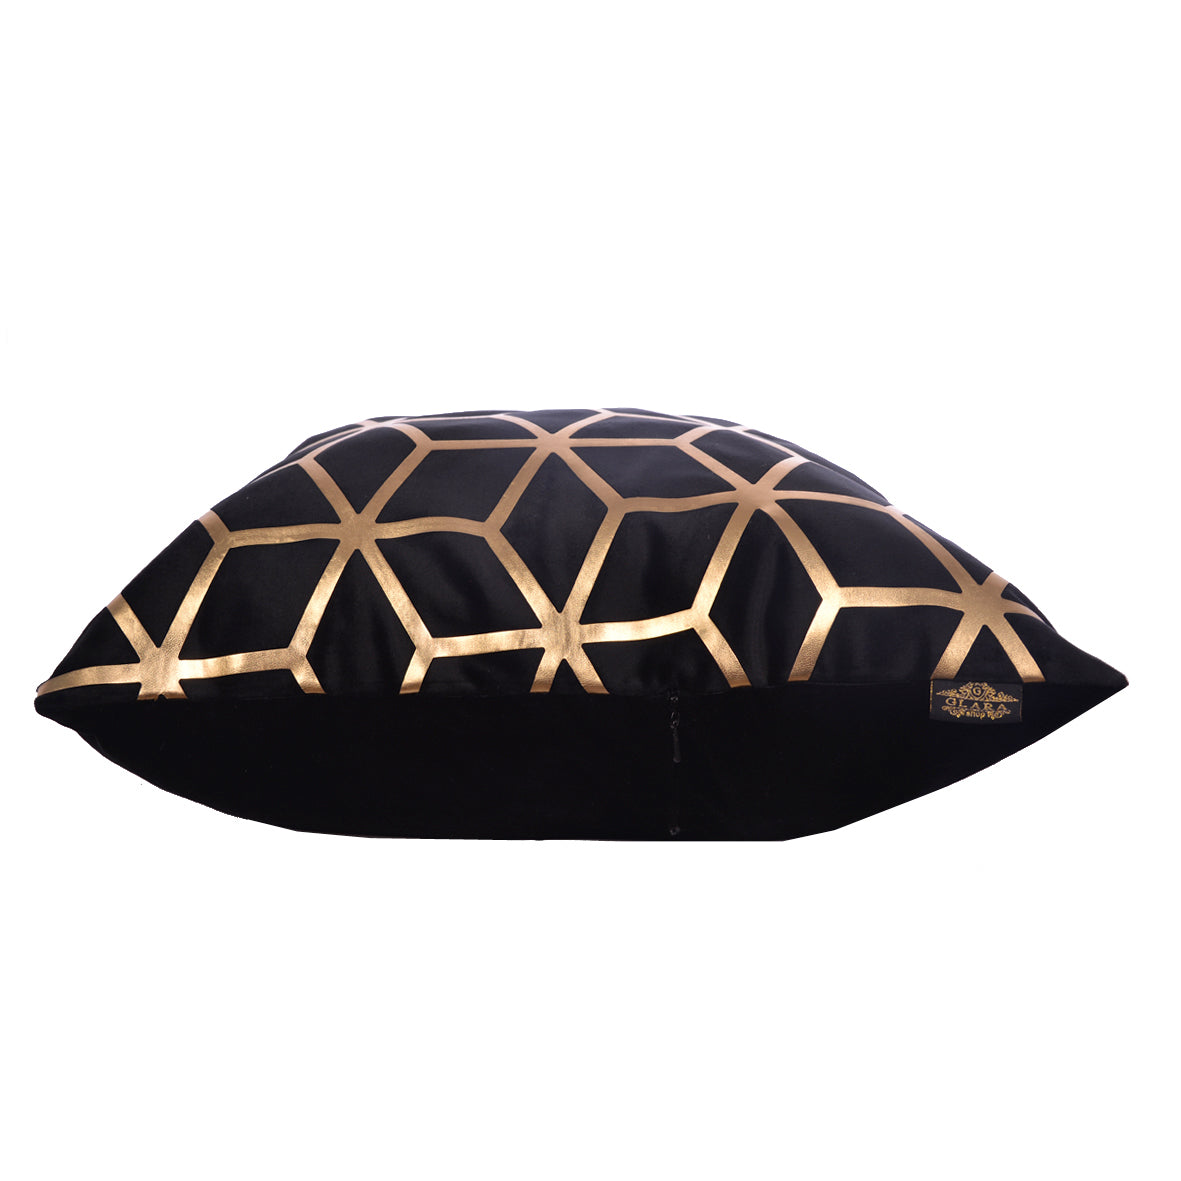 Luxury Velvet Throw Pillow Cover (Block & Gold Cushion Cover)